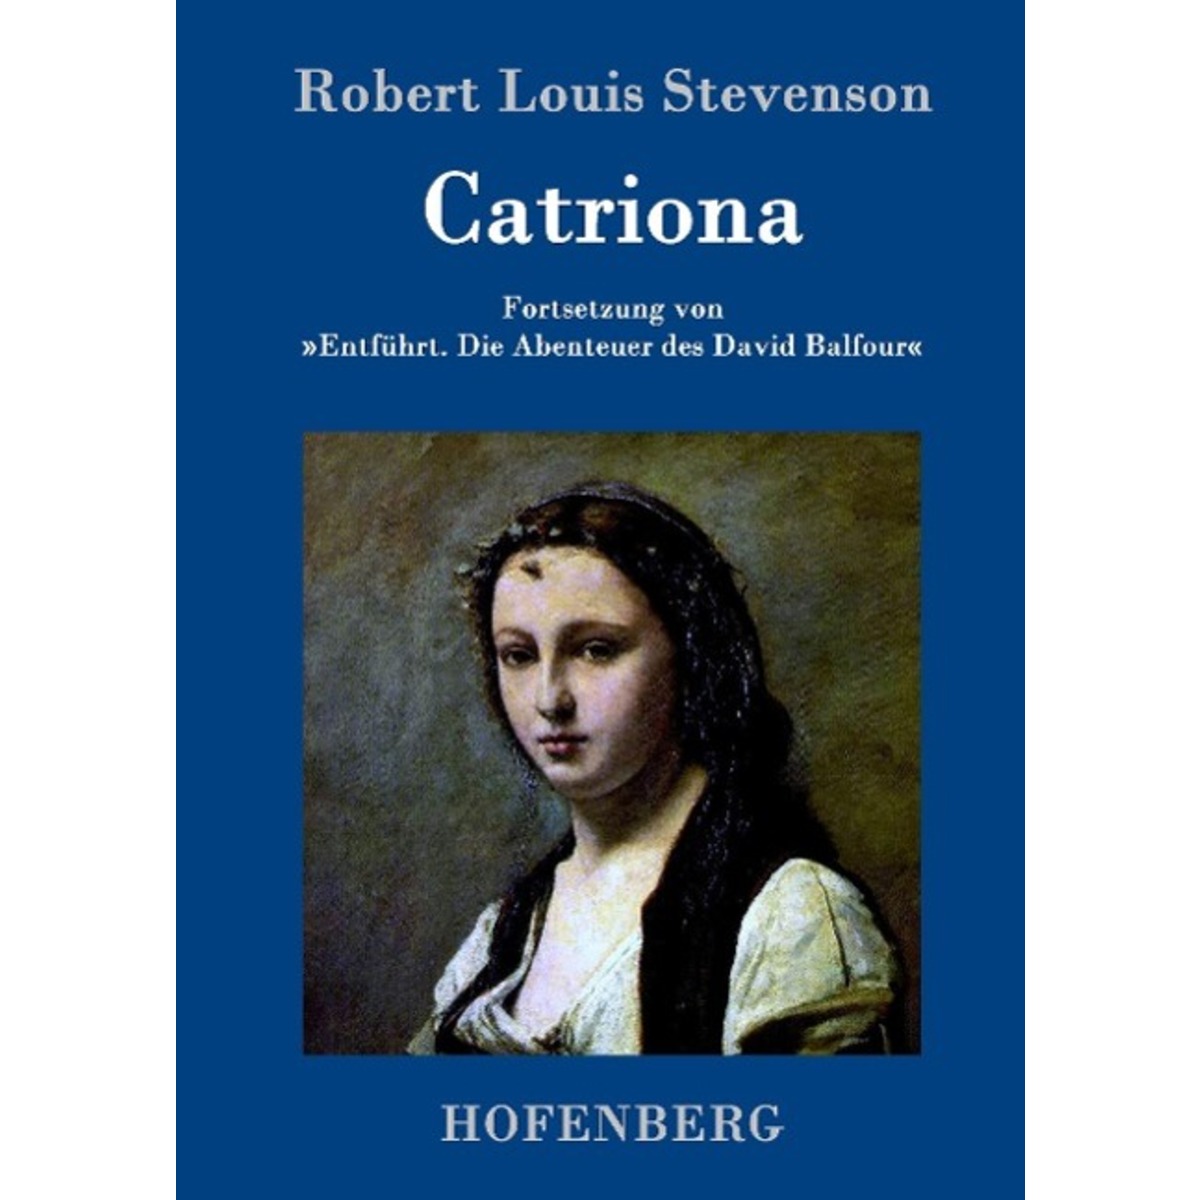 Catriona von Hofenberg